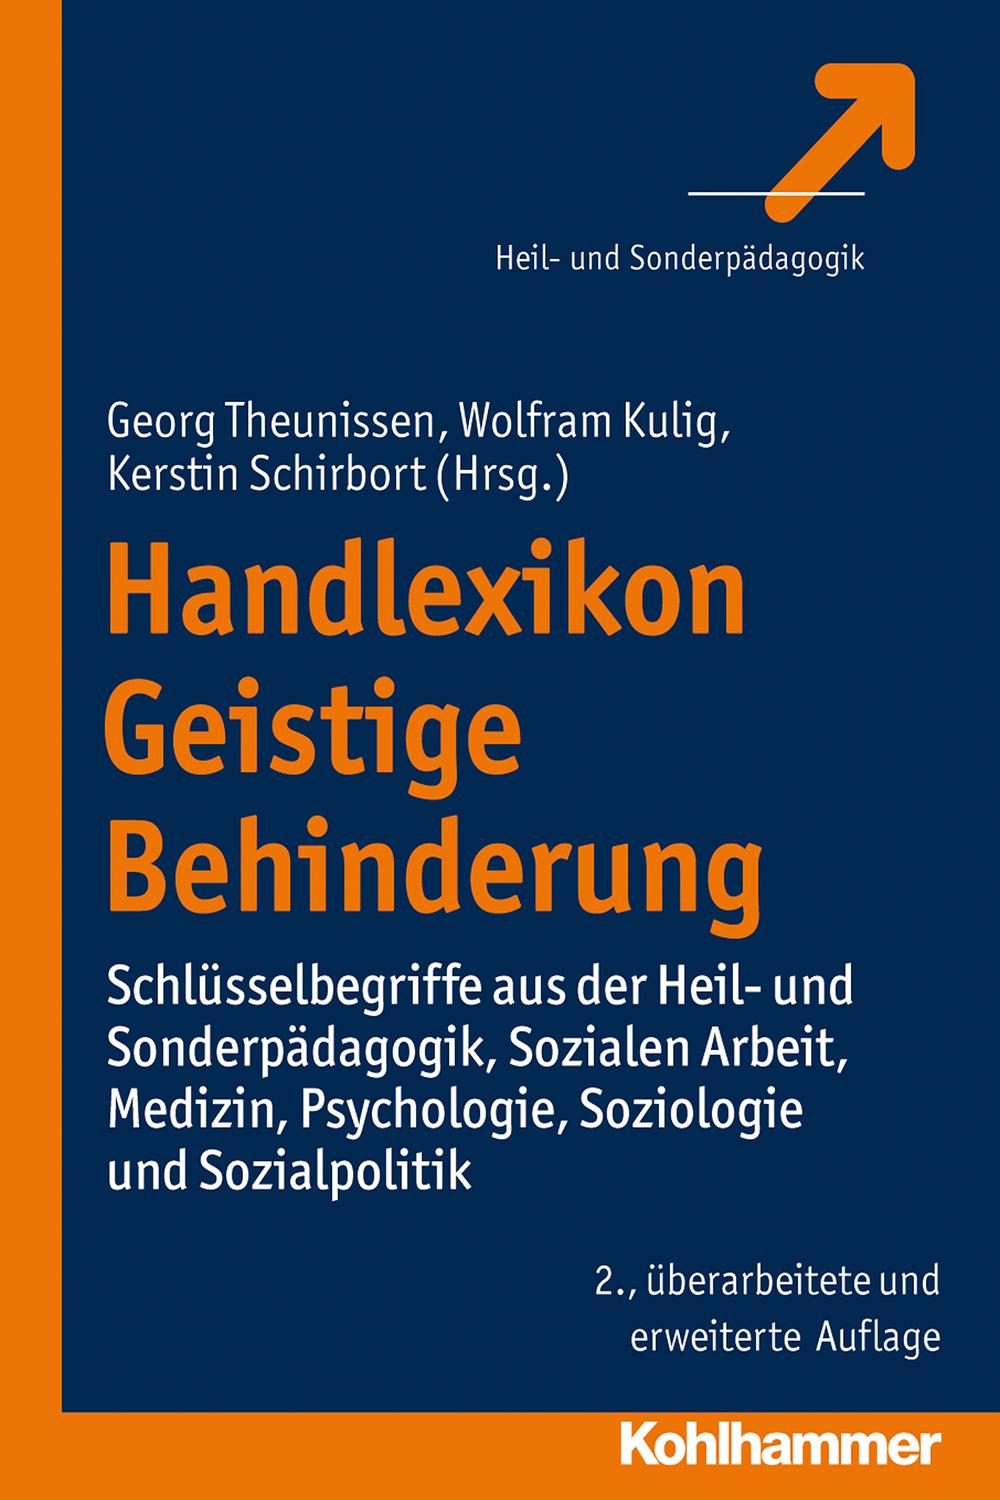 Handlexikon Geistige Behinderung - Georg Theunissen, Wolfram Kulig, Kerstin Schirbort